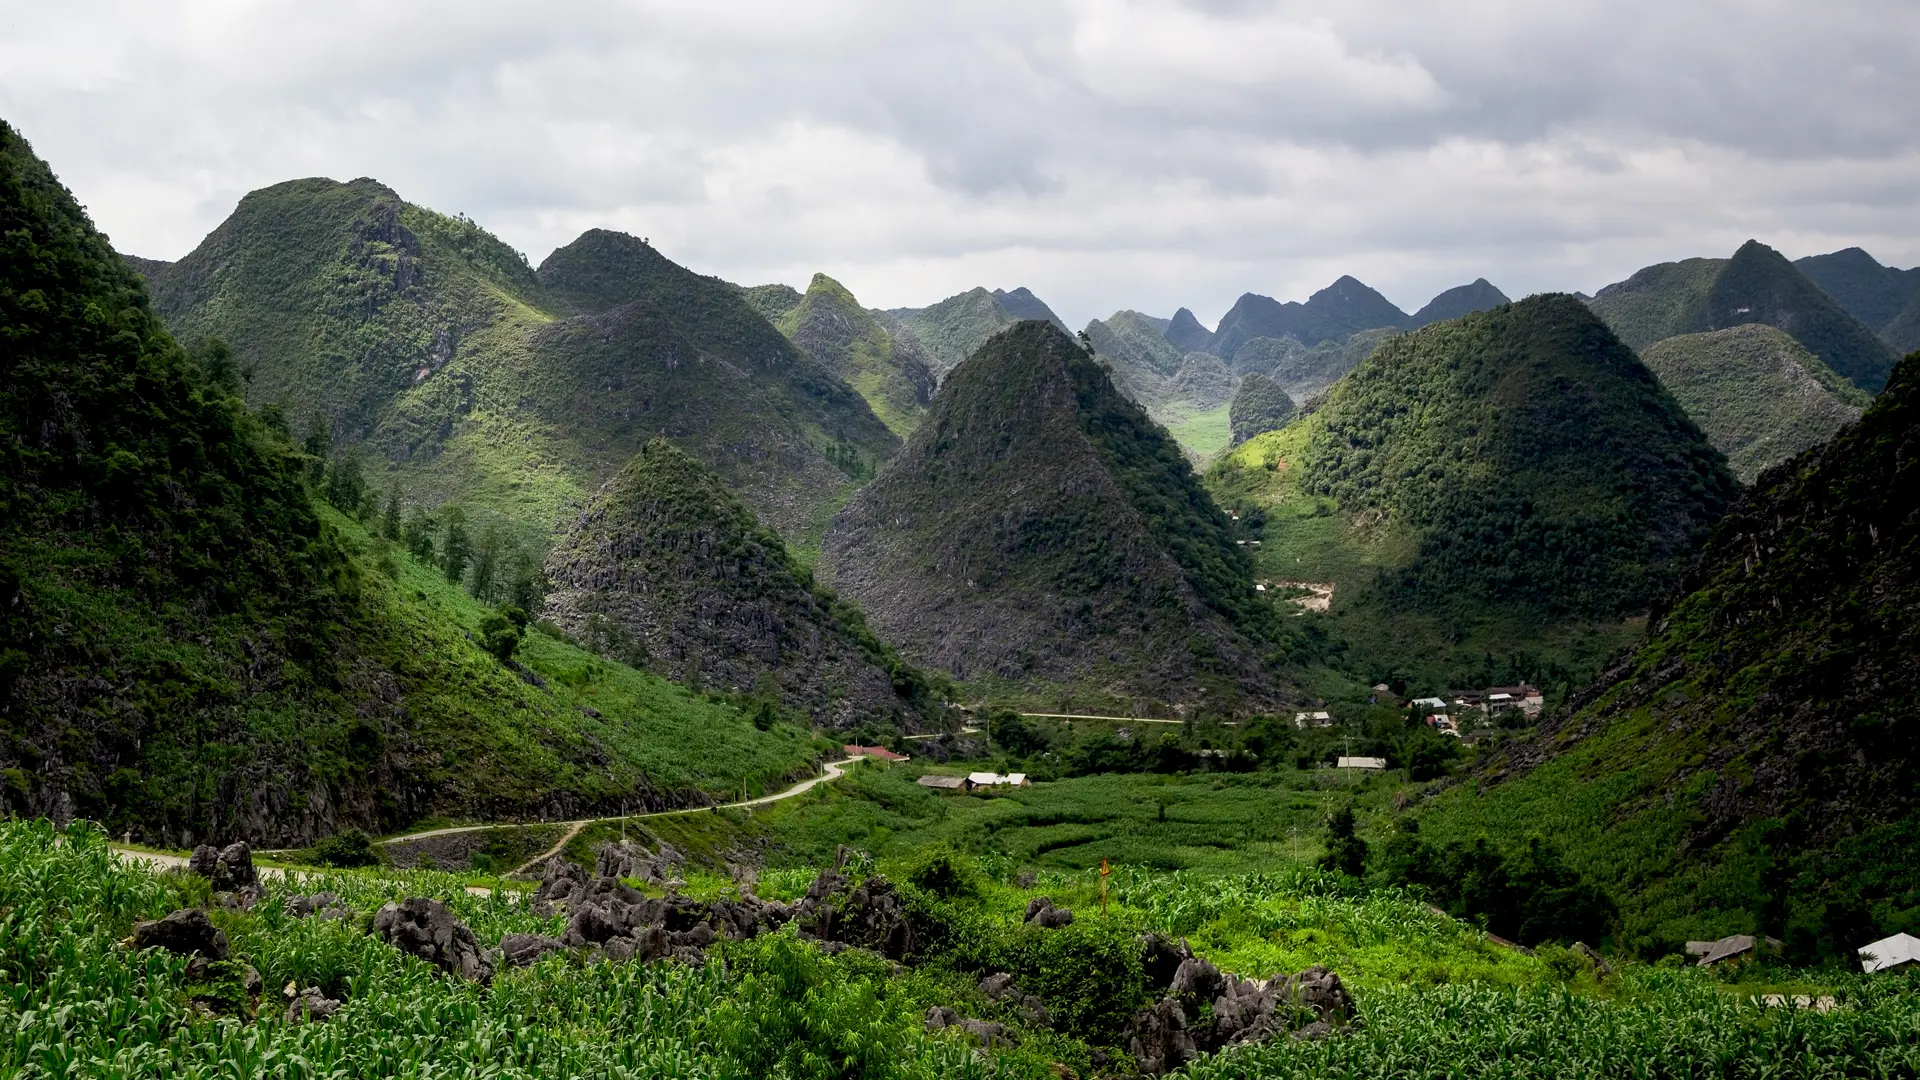 EVENTYRLIGT LANDSKAB - Er nok de to ord, der bedst beskriver bjerglandskabet i Ha Giang-provinsen. Men virkeligheden overgår ethvert foto, Check Point Travel